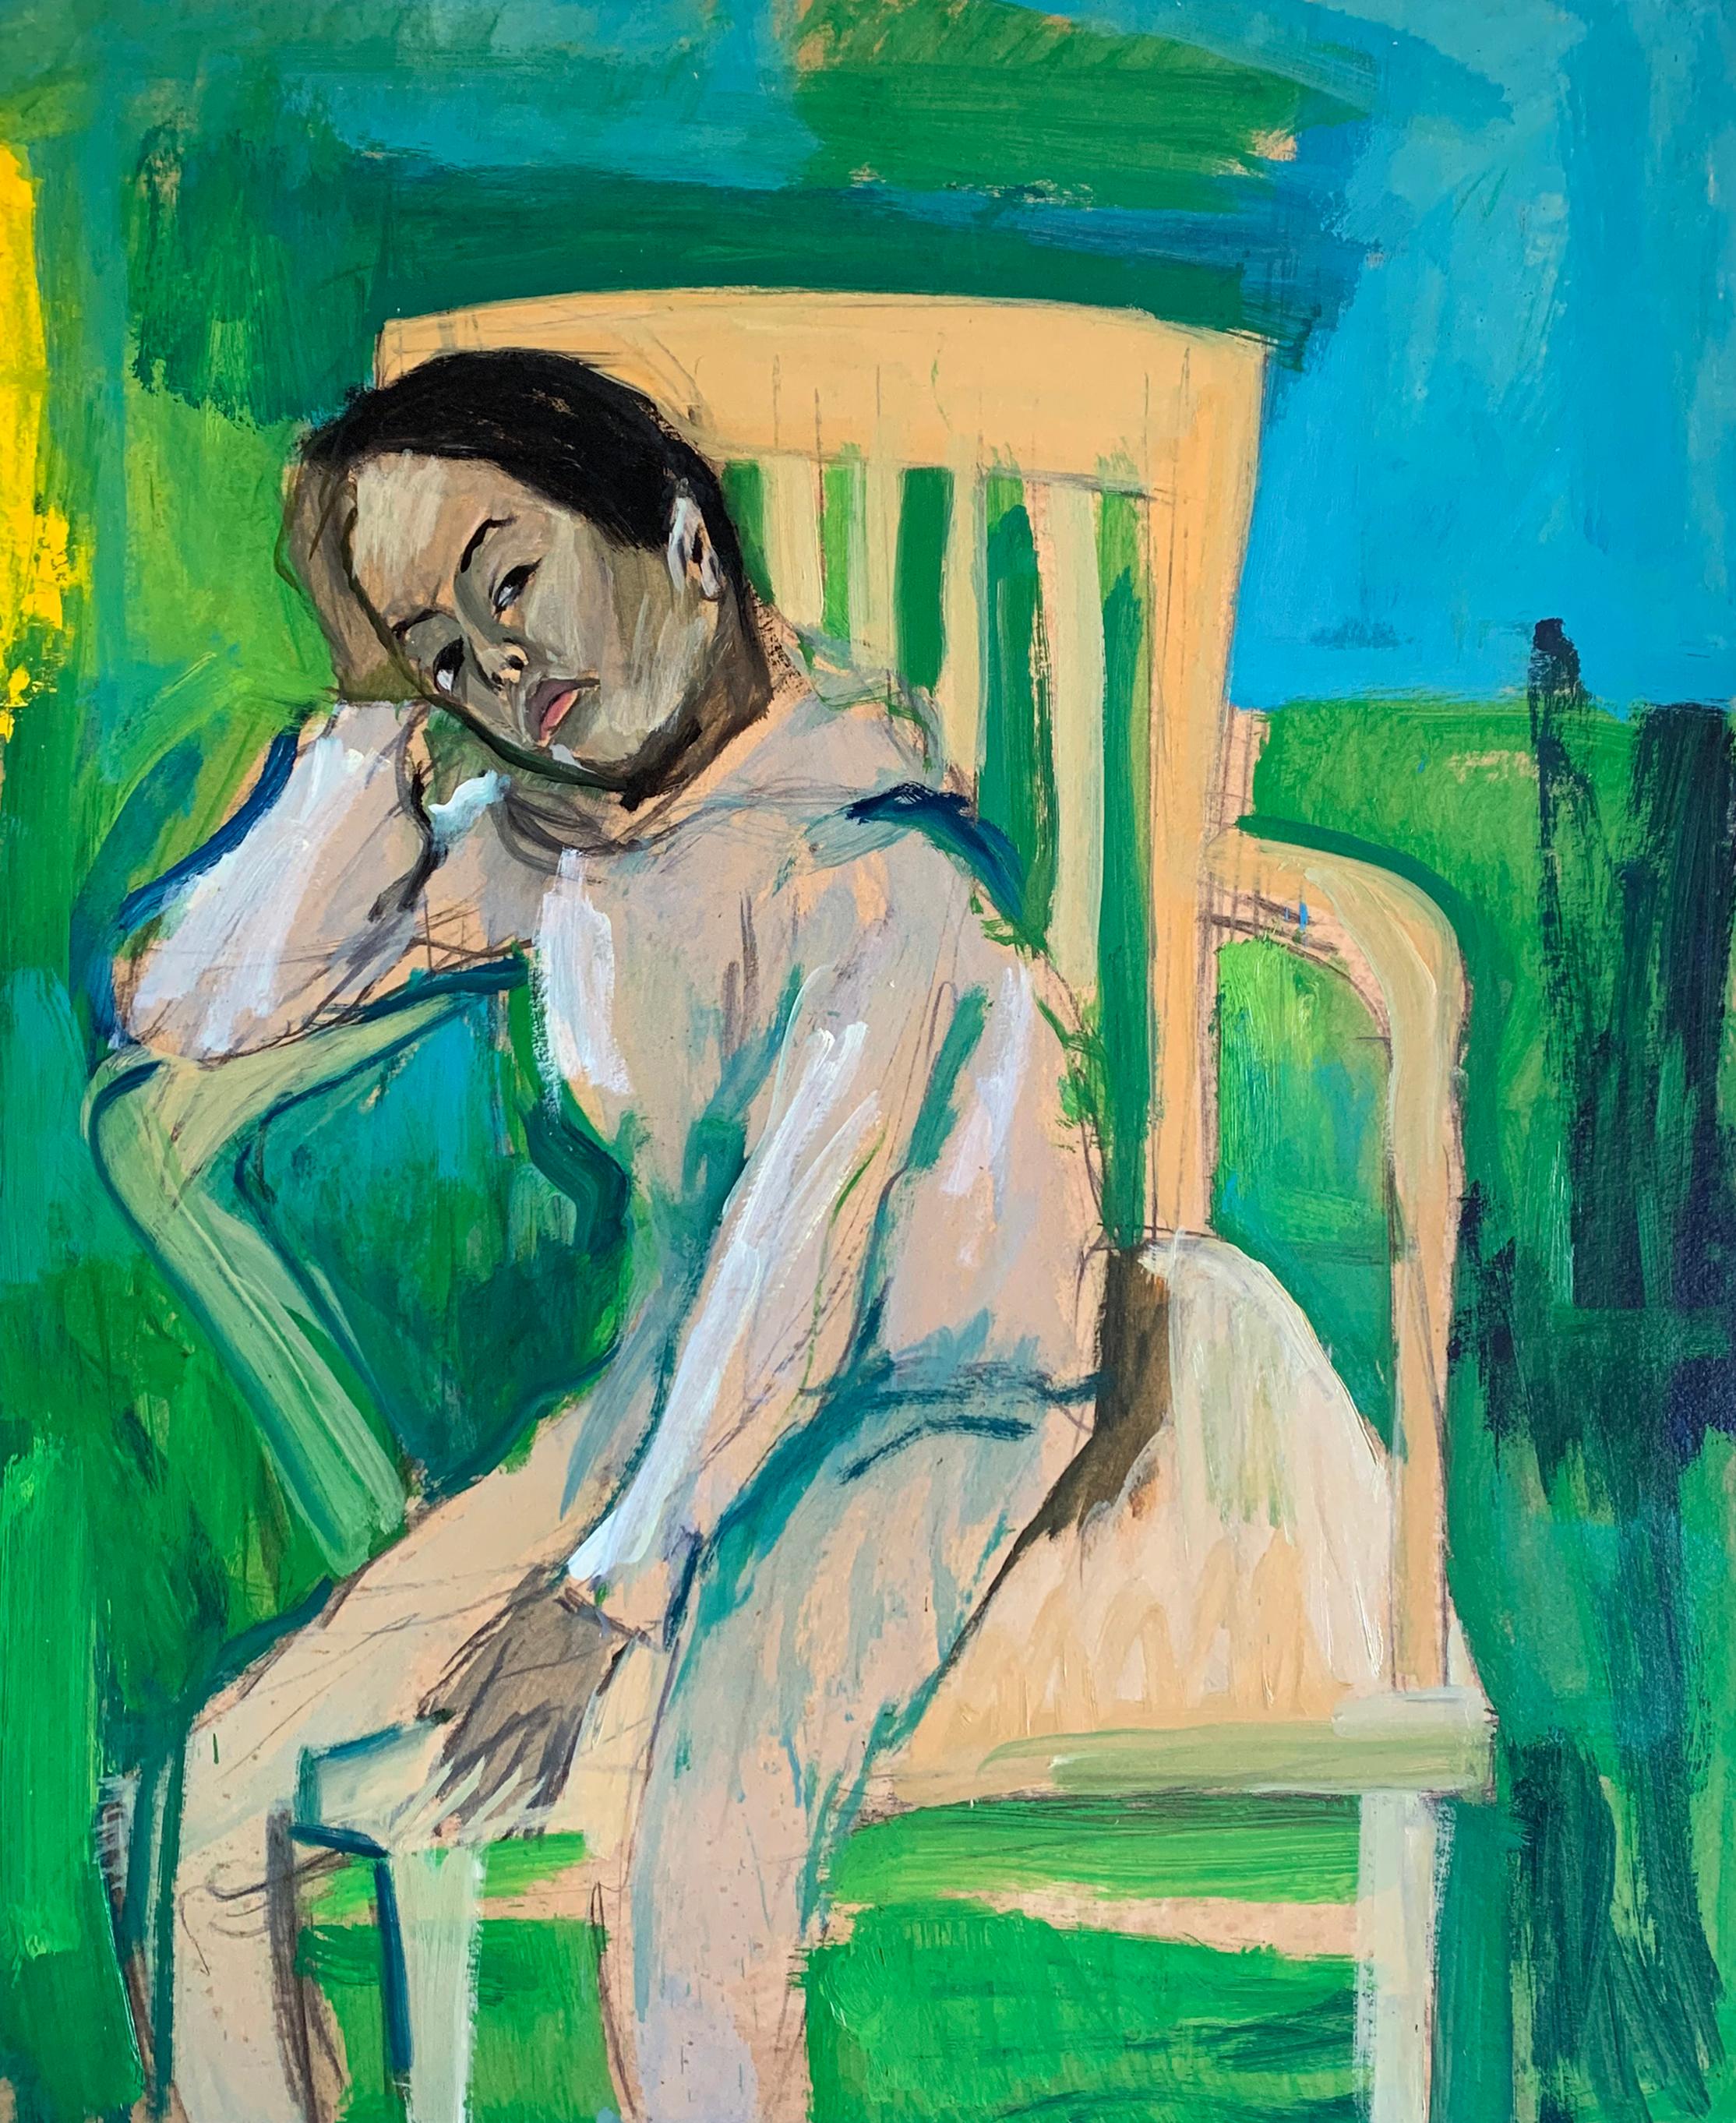 Das ruhende Kind im Stuhl, expressionistisches Porträt des Künstlers aus Philadelphia